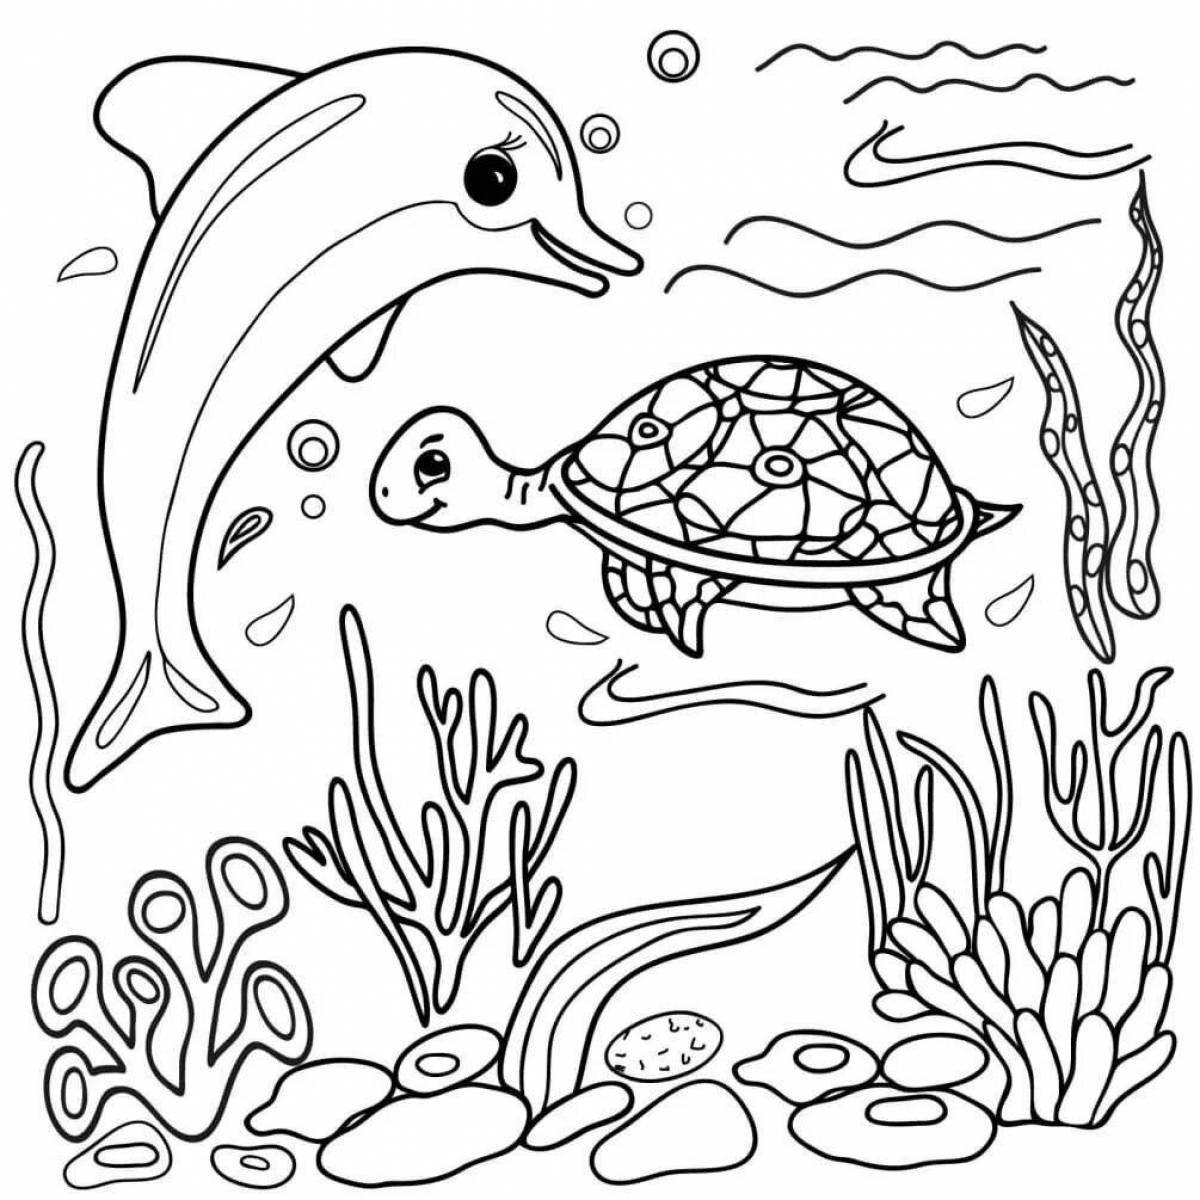 Aquatic life coloring book